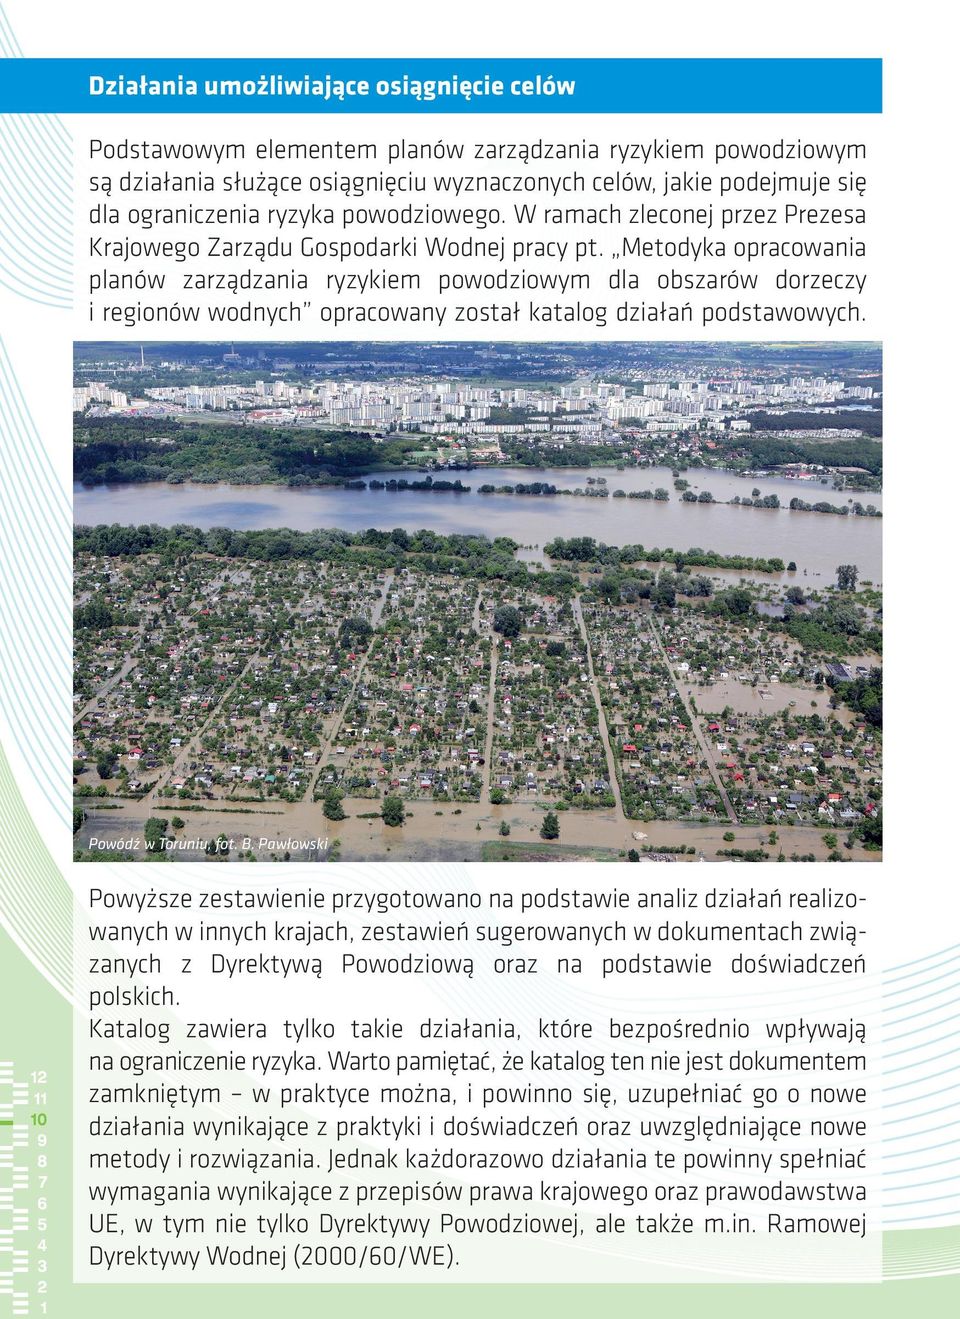 Metodyka opracowania planów zarządzania ryzykiem powodziowym dla obszarów dorzeczy i regionów wodnych opracowany został katalog działań podstawowych. Powódź w Toruniu, fot. B.